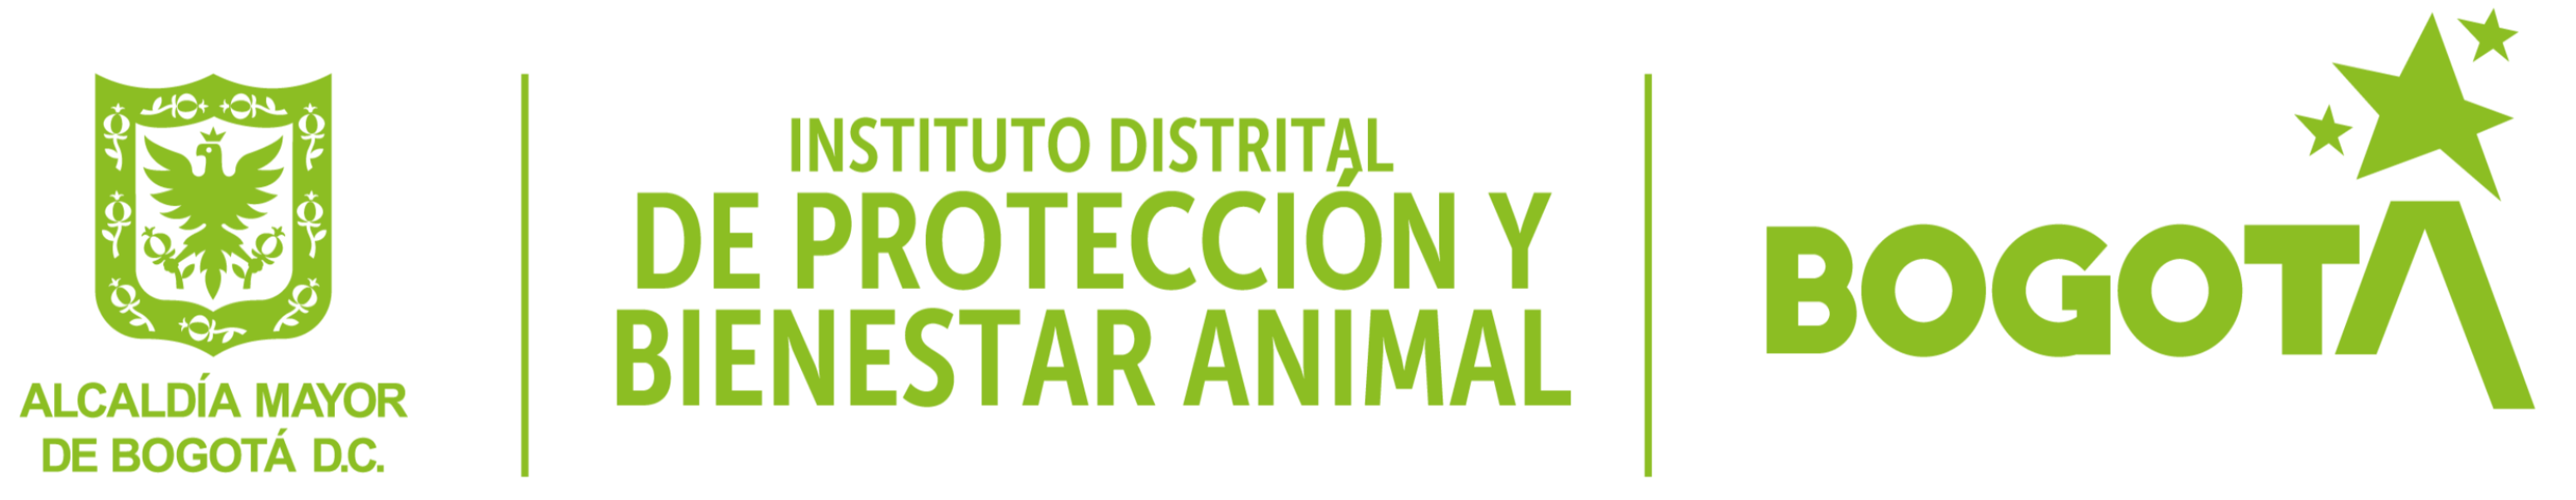 Instituto Distrital de Protección y Bienestar Animal